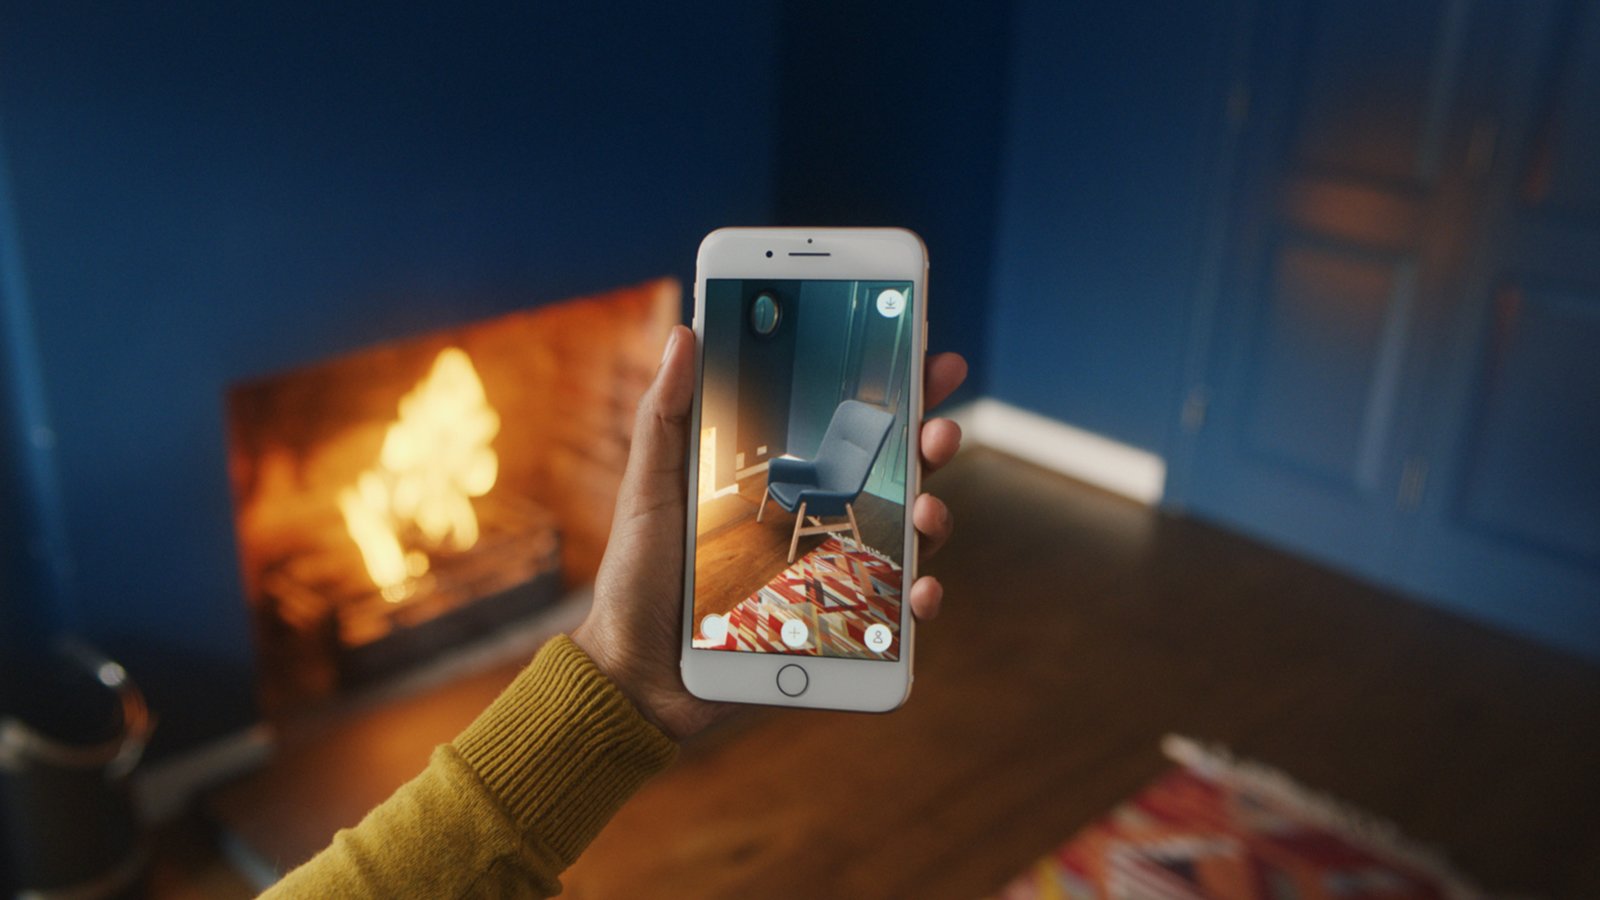 Møbelkjede lanserer ny app som lar folk plassere møbler virtuelt